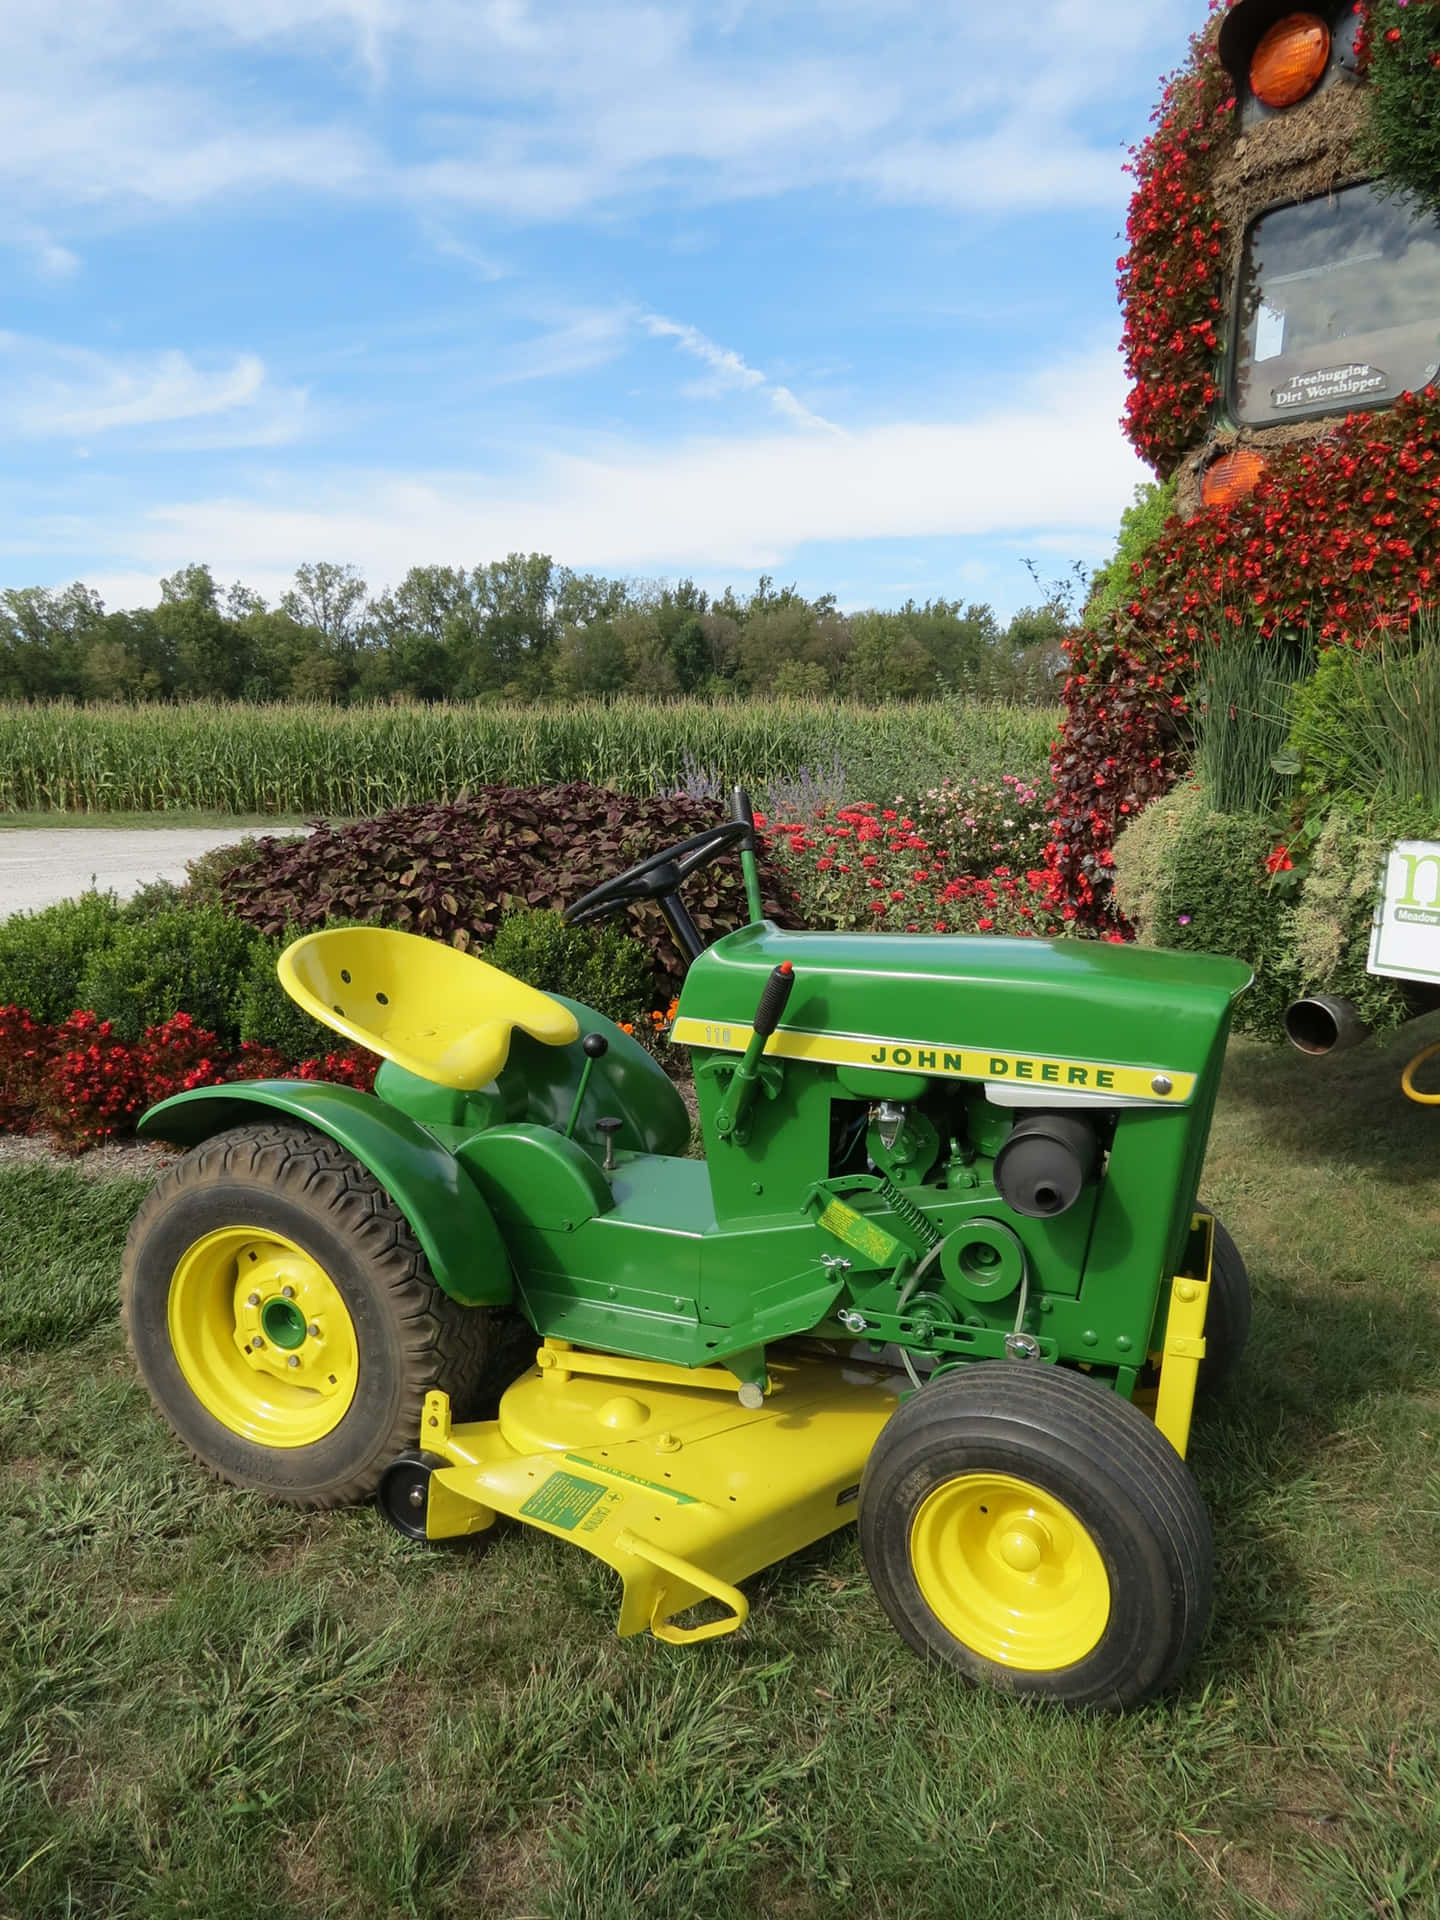 Imagende Un Tractor Amarillo-verde